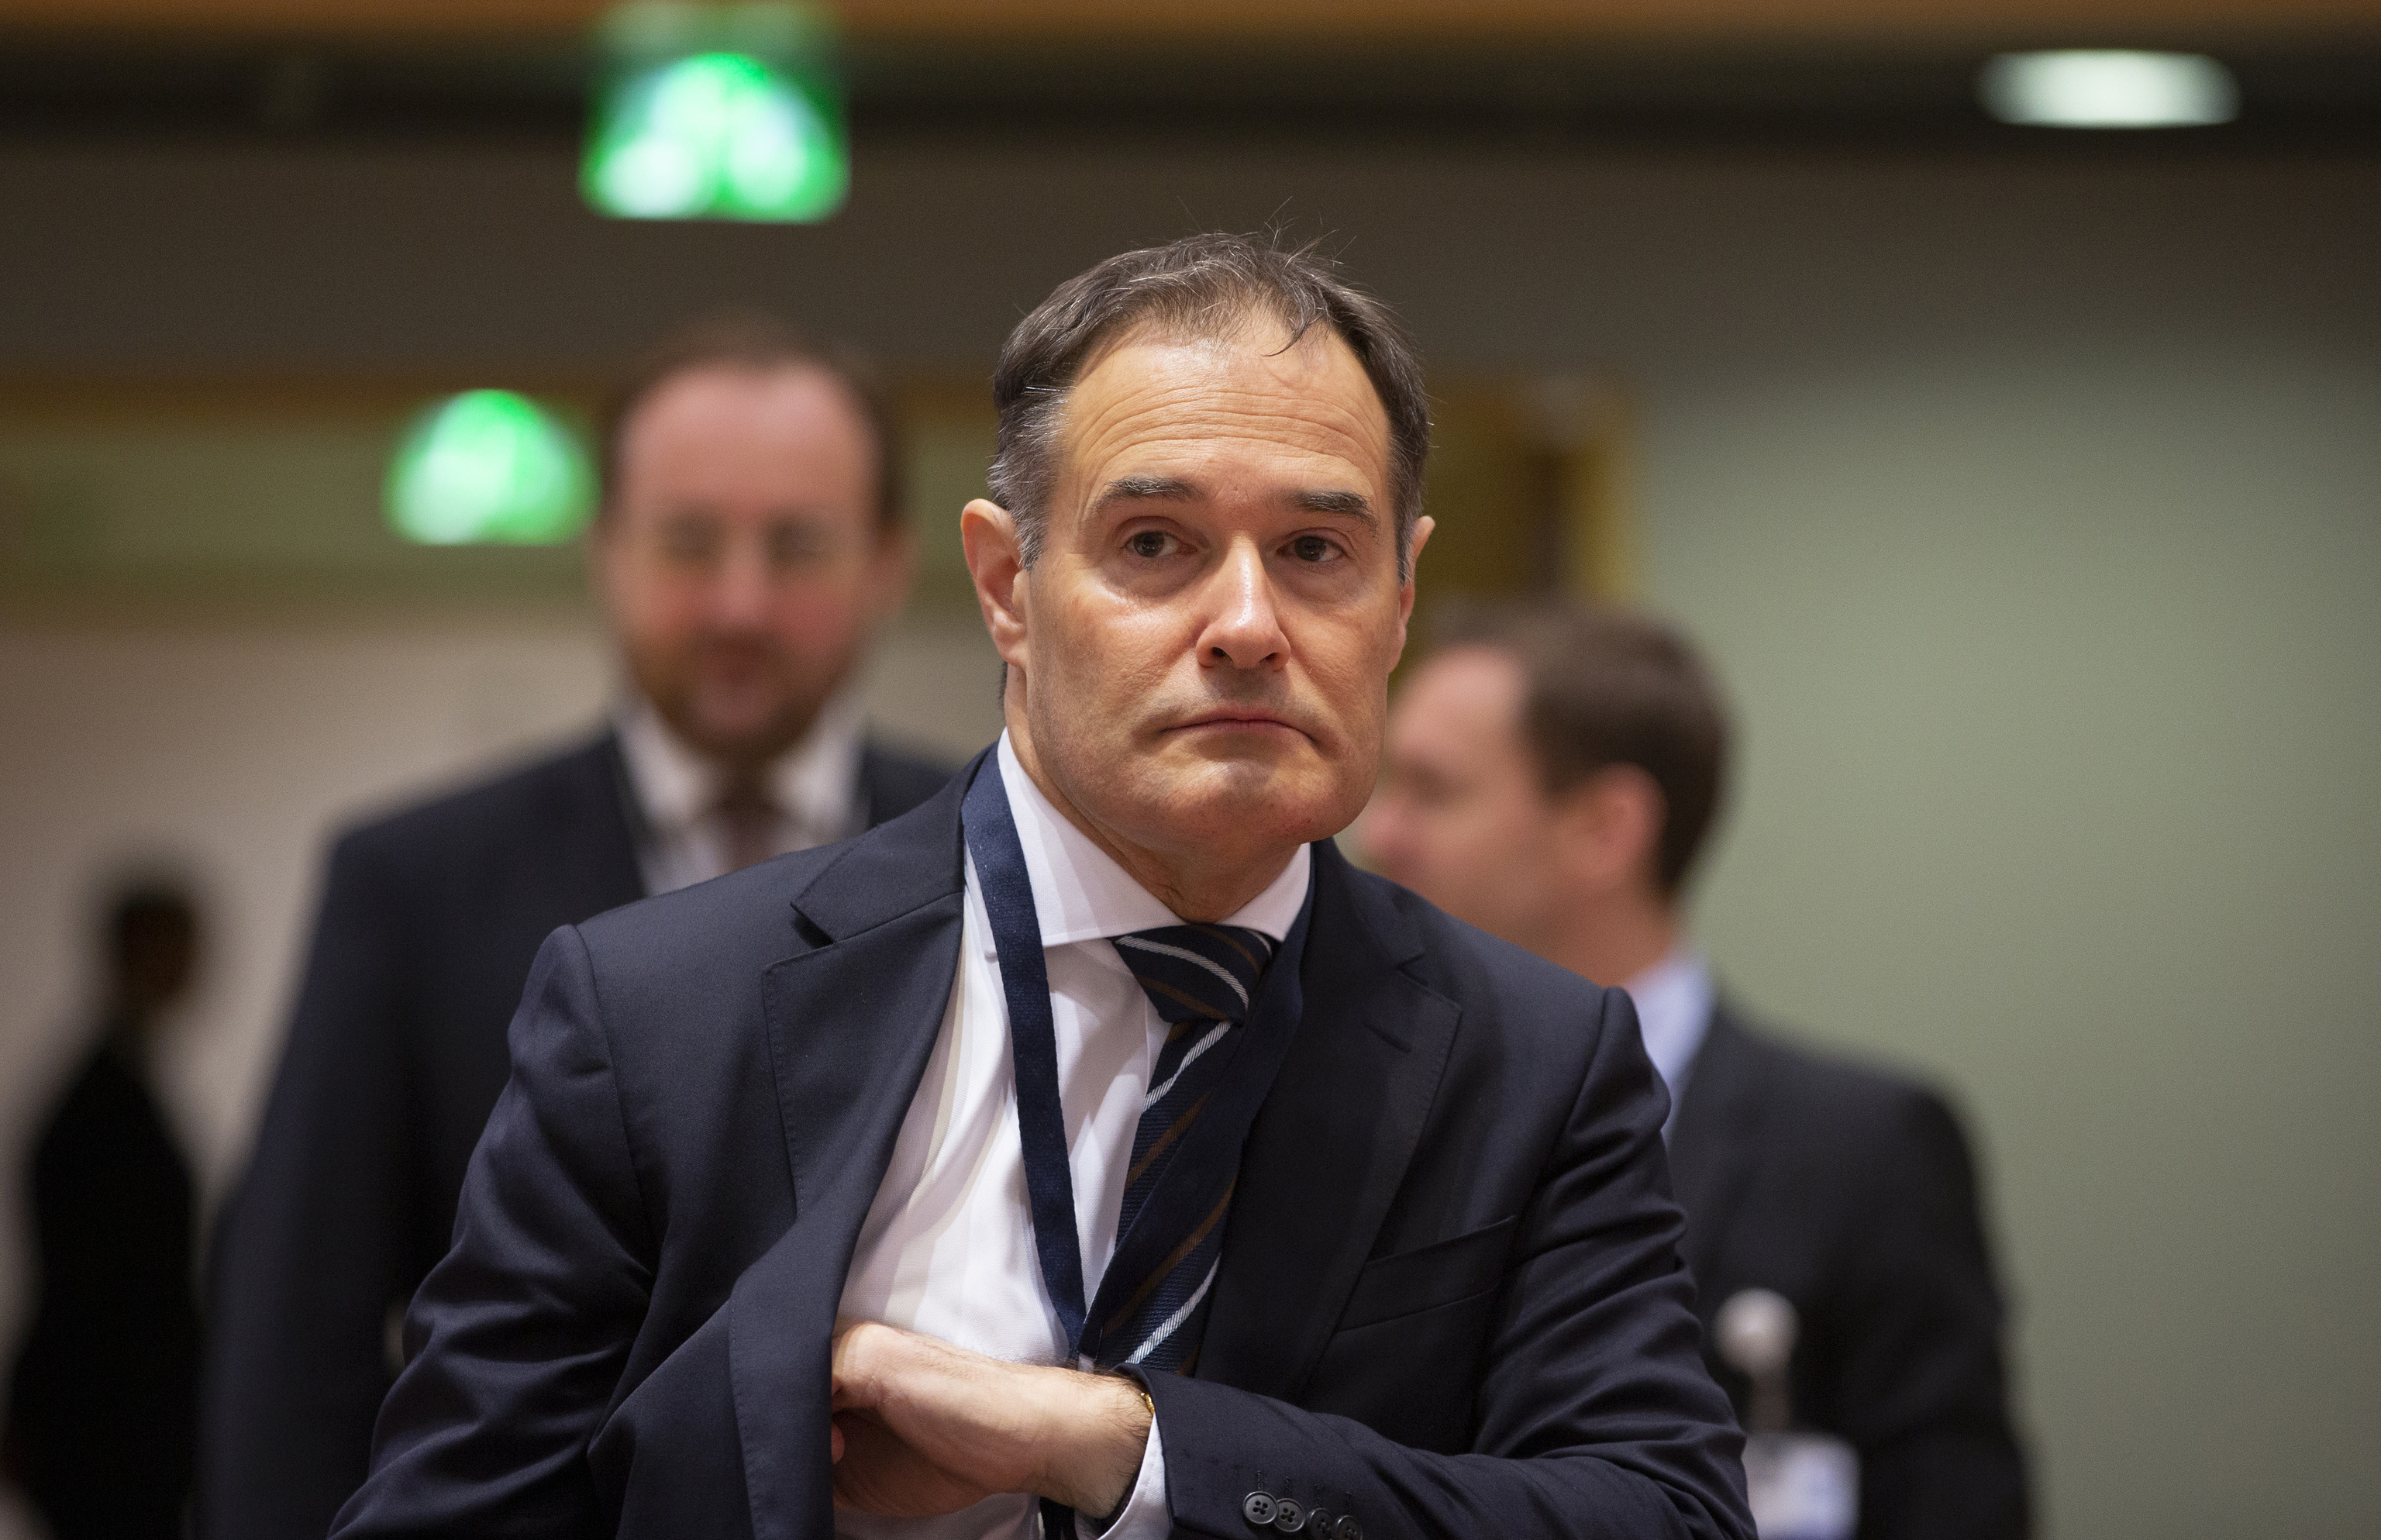 Dimite el director de Frontex después de tres años de escándalos y devoluciones en caliente ilegales